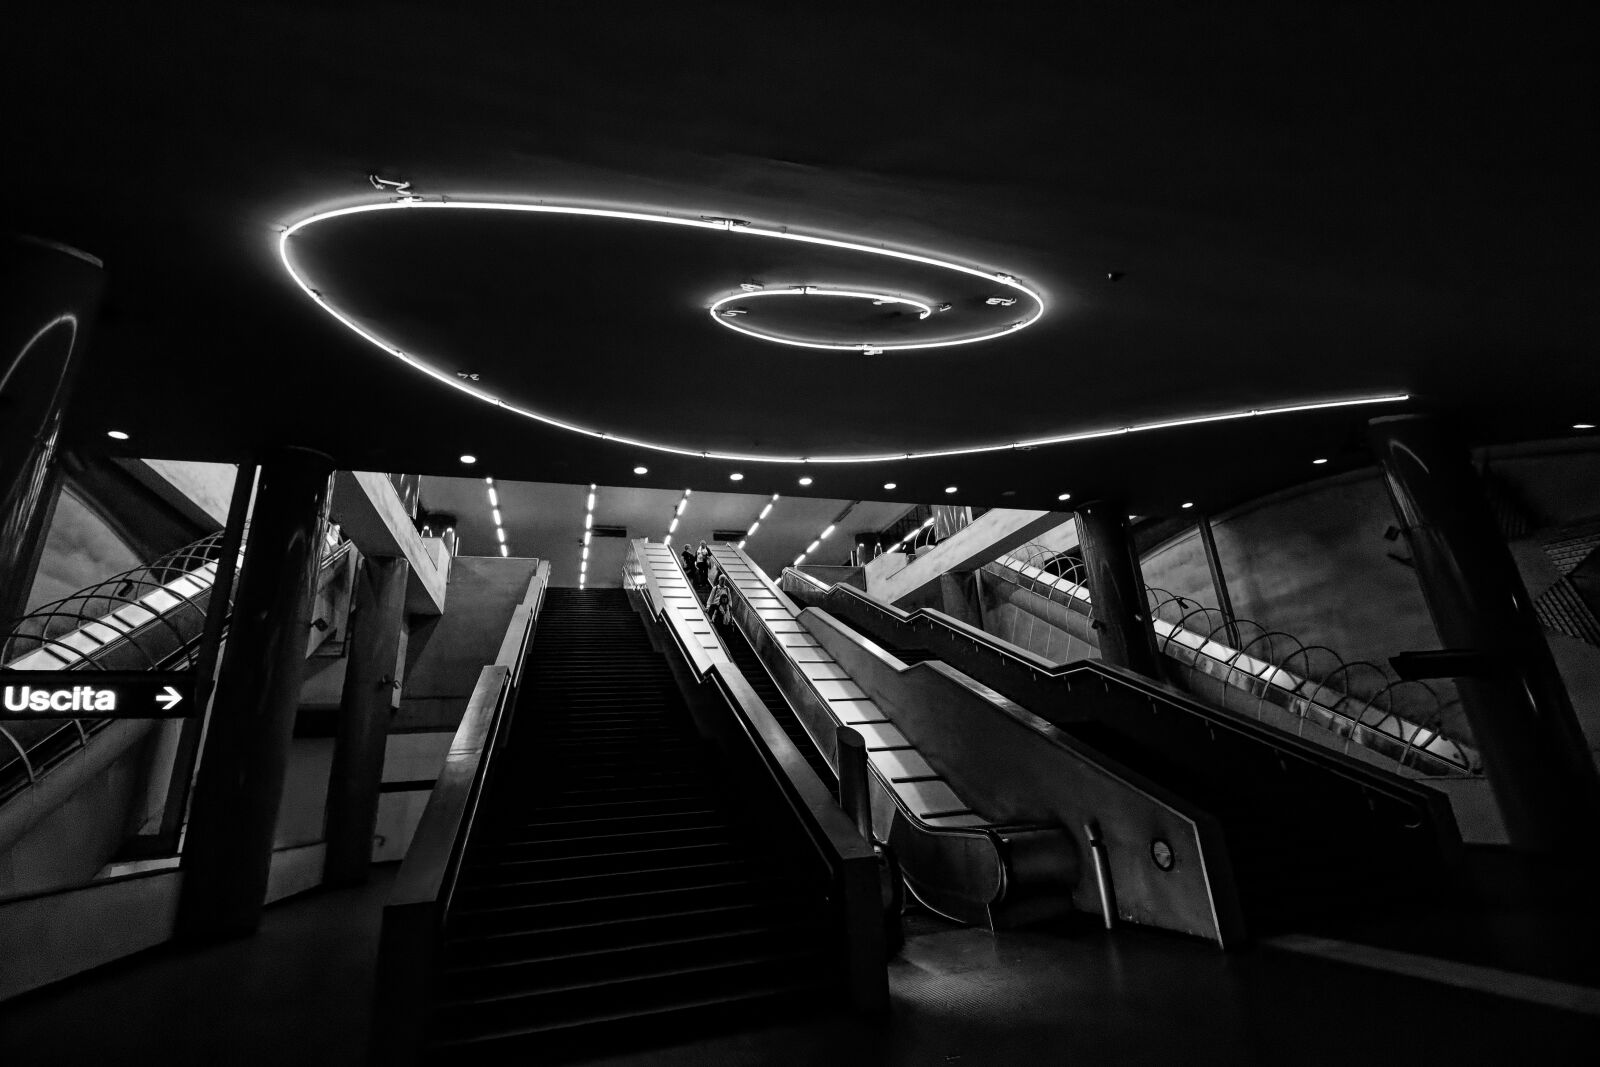 Canon EOS 100D (EOS Rebel SL1 / EOS Kiss X7) sample photo. Metro, escalator, urban photography